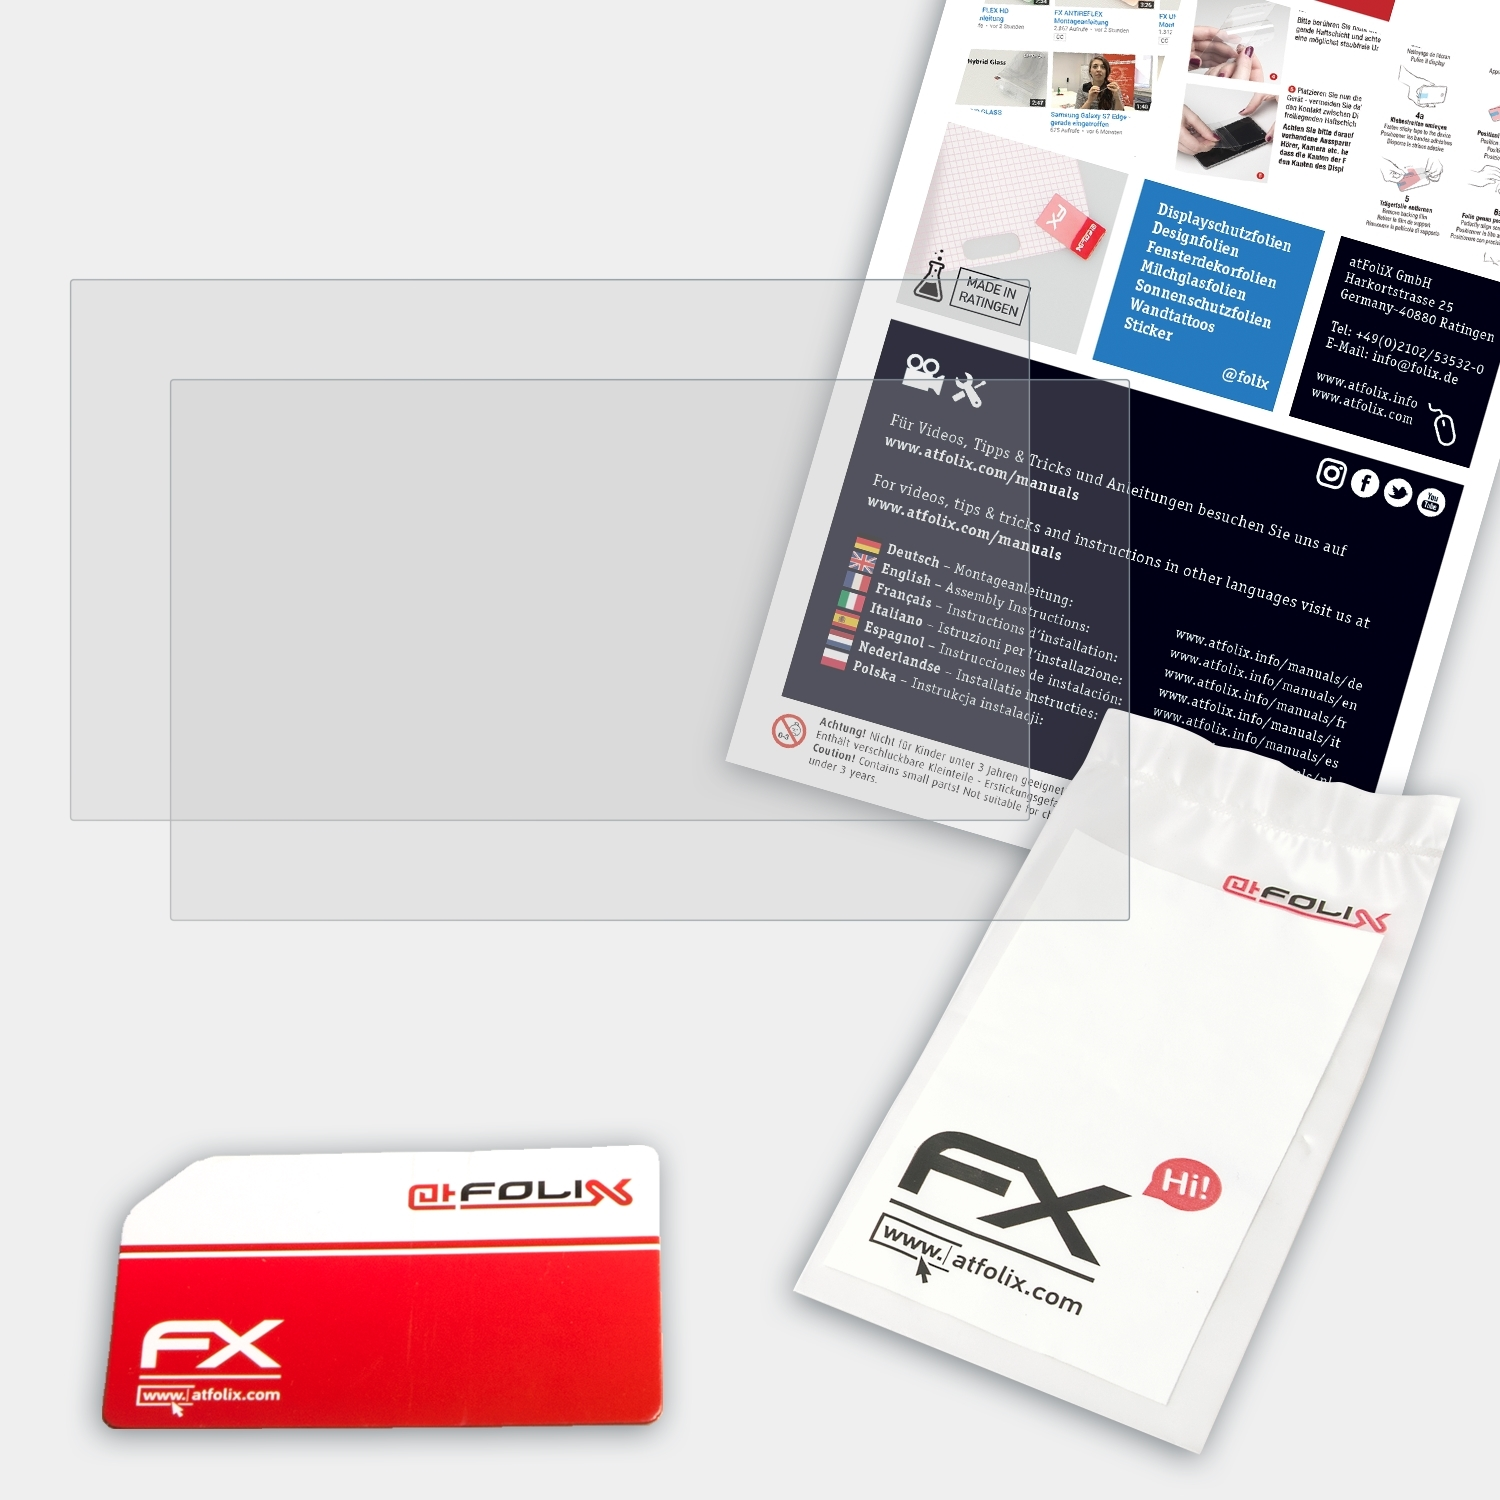 ATFOLIX 2x FX-Antireflex ThinkPad Lenovo T495) Displayschutz(für